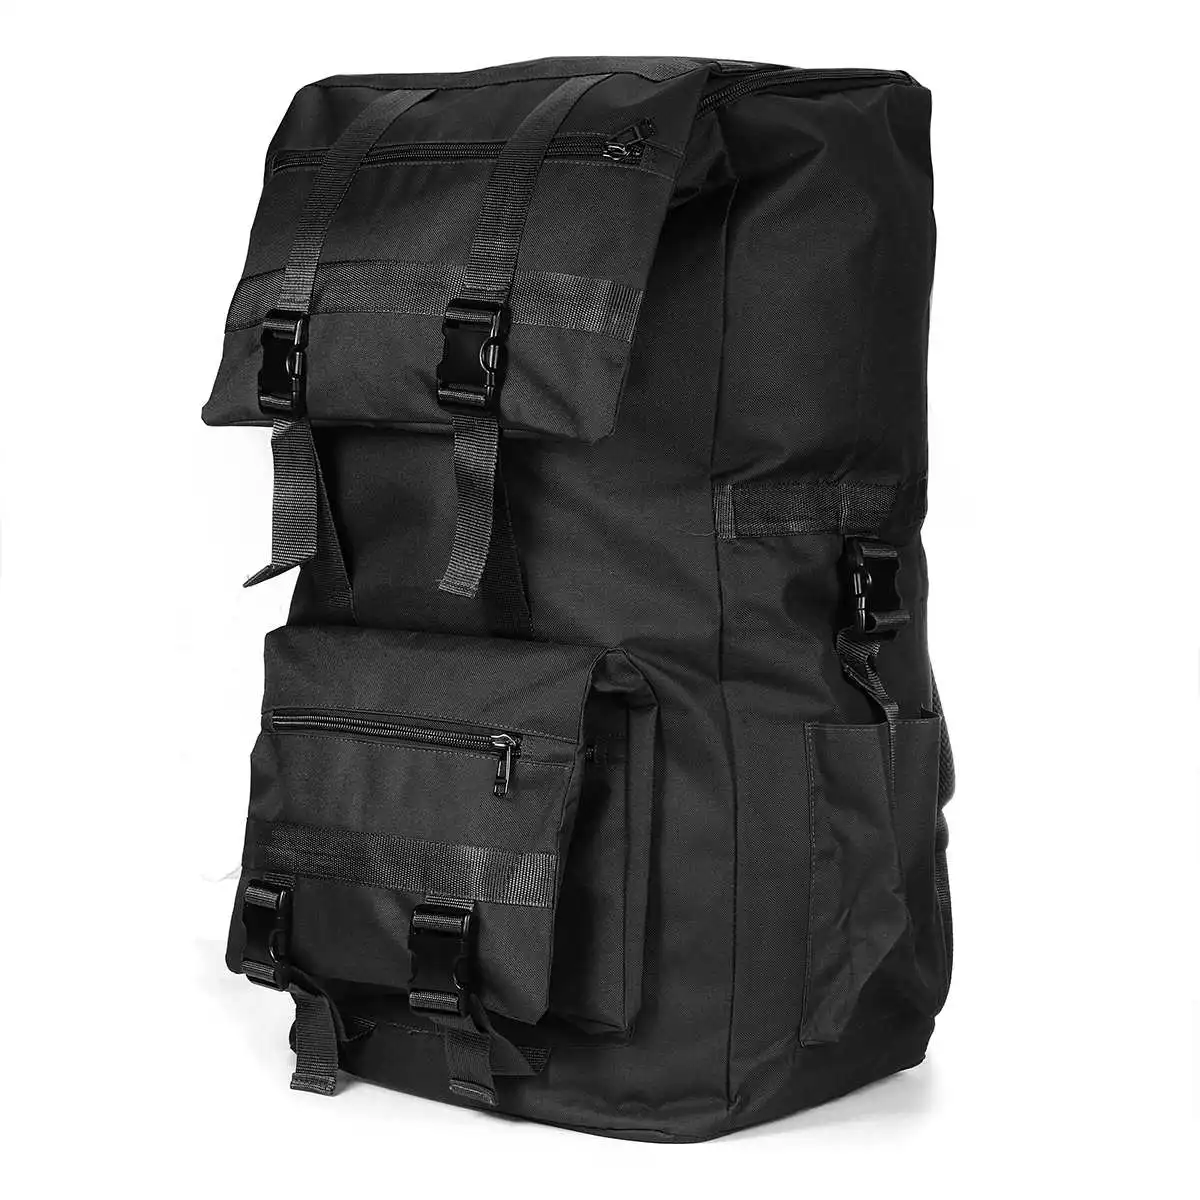 110л альпинистская Сумка военный рюкзак Водонепроницаемый тактический рюкзак спортивный Кемпинг Туризм альпинистская сумка для женщин и мужчин - Цвет: Black